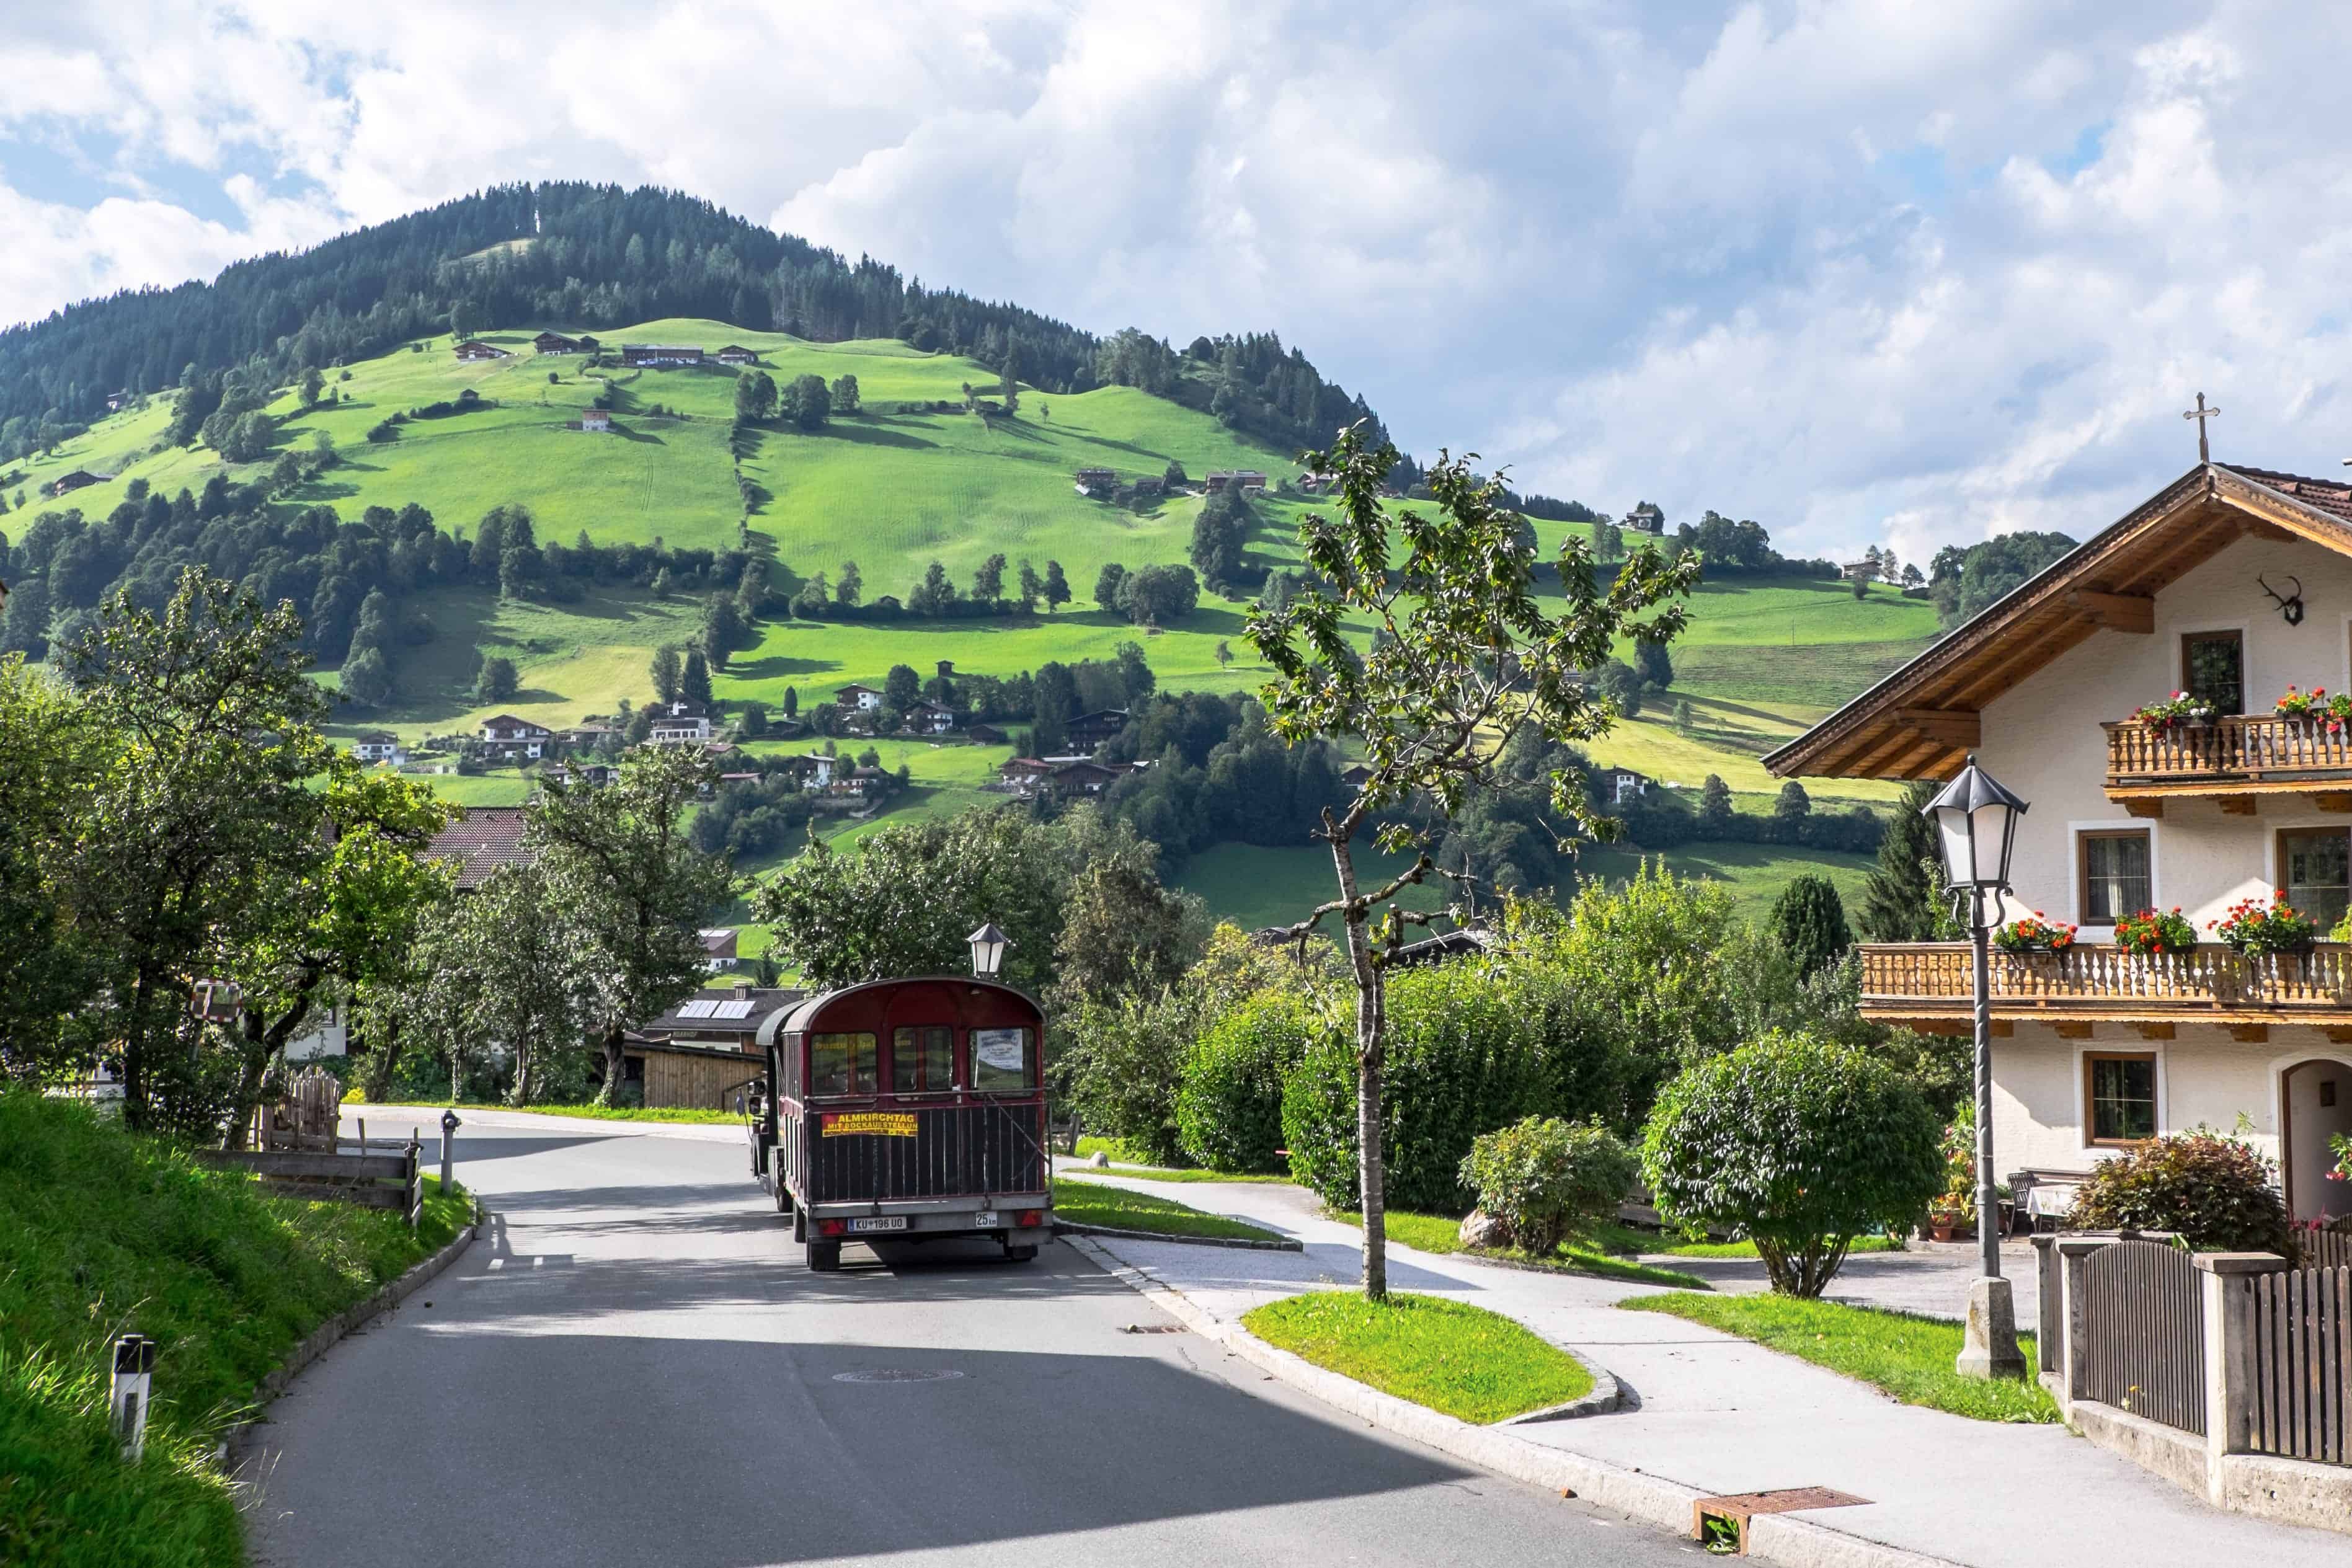 Villages of the Wildschönau Valley, Tirol, Austria